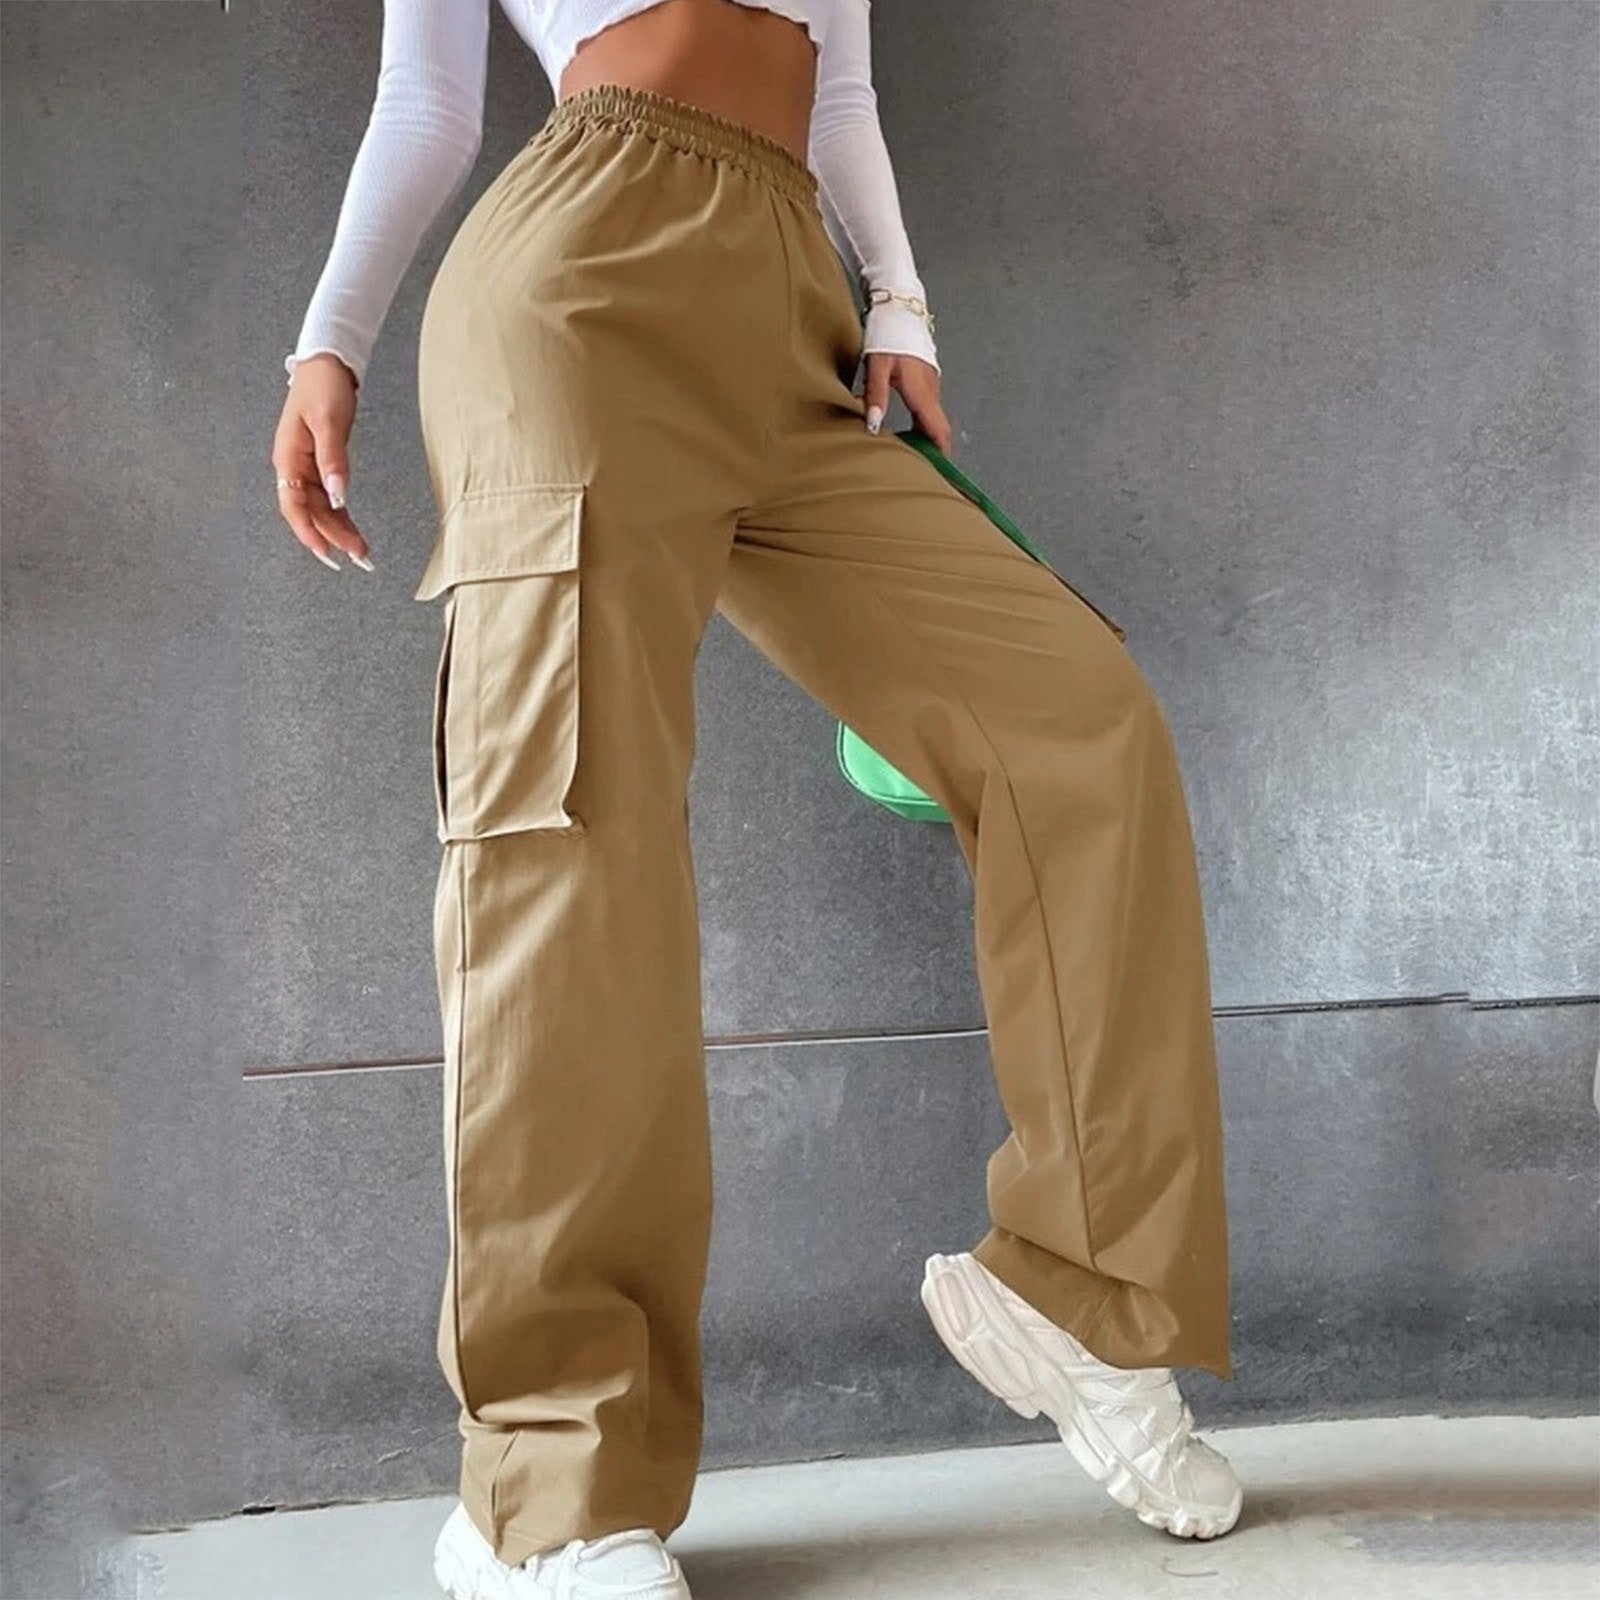 Women's Cargo Pants